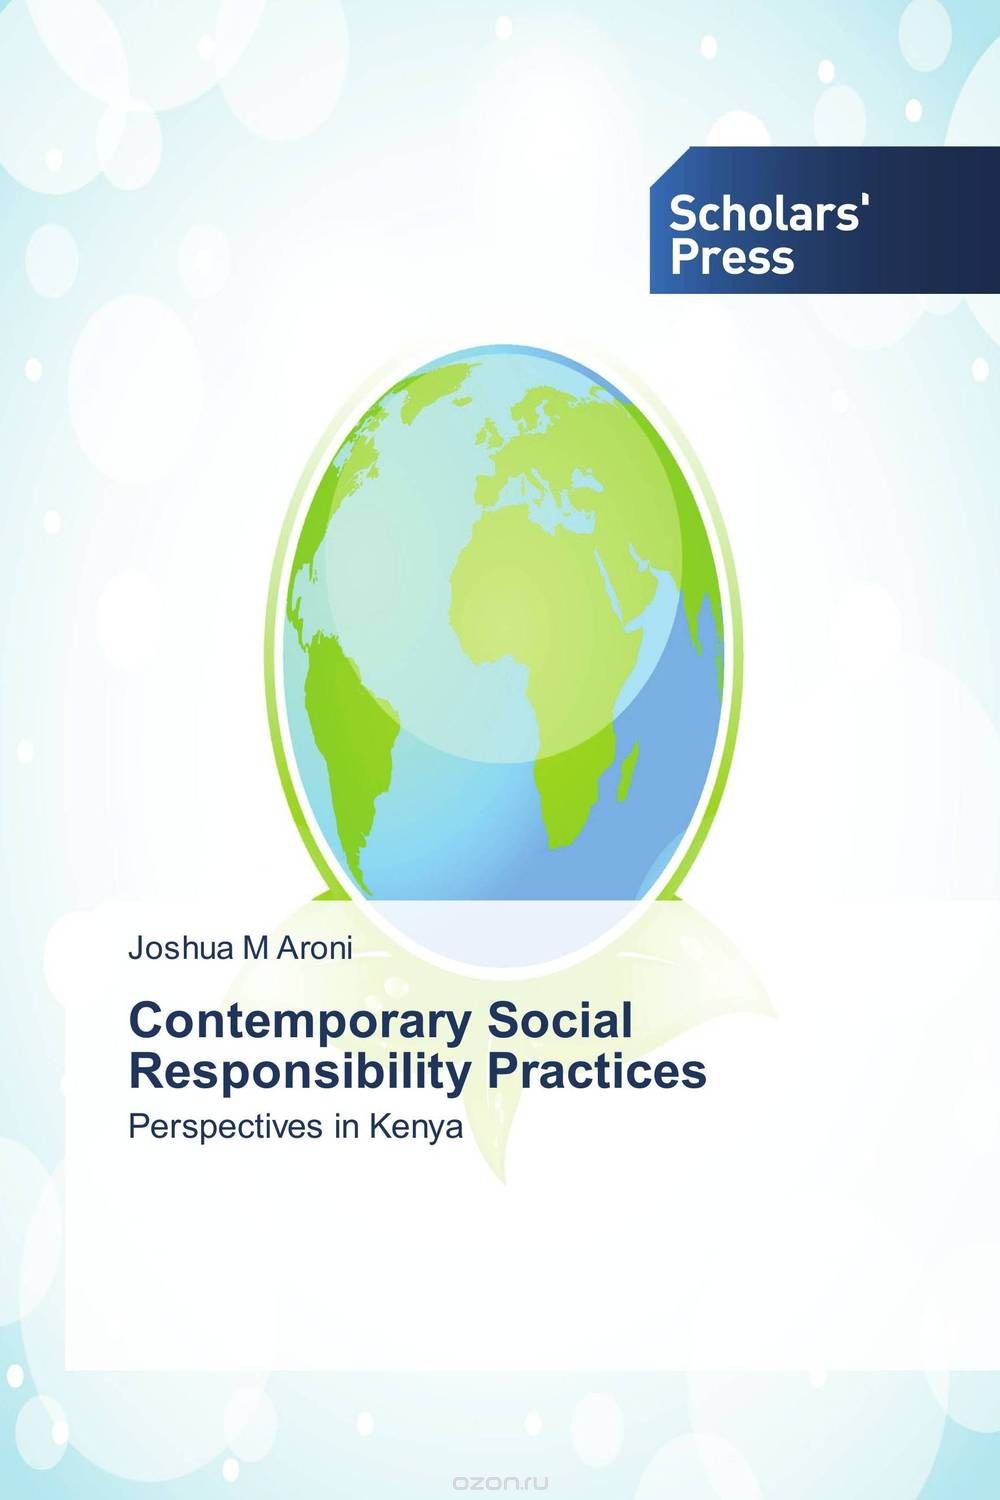 Скачать книгу "Contemporary Social Responsibility Practices"